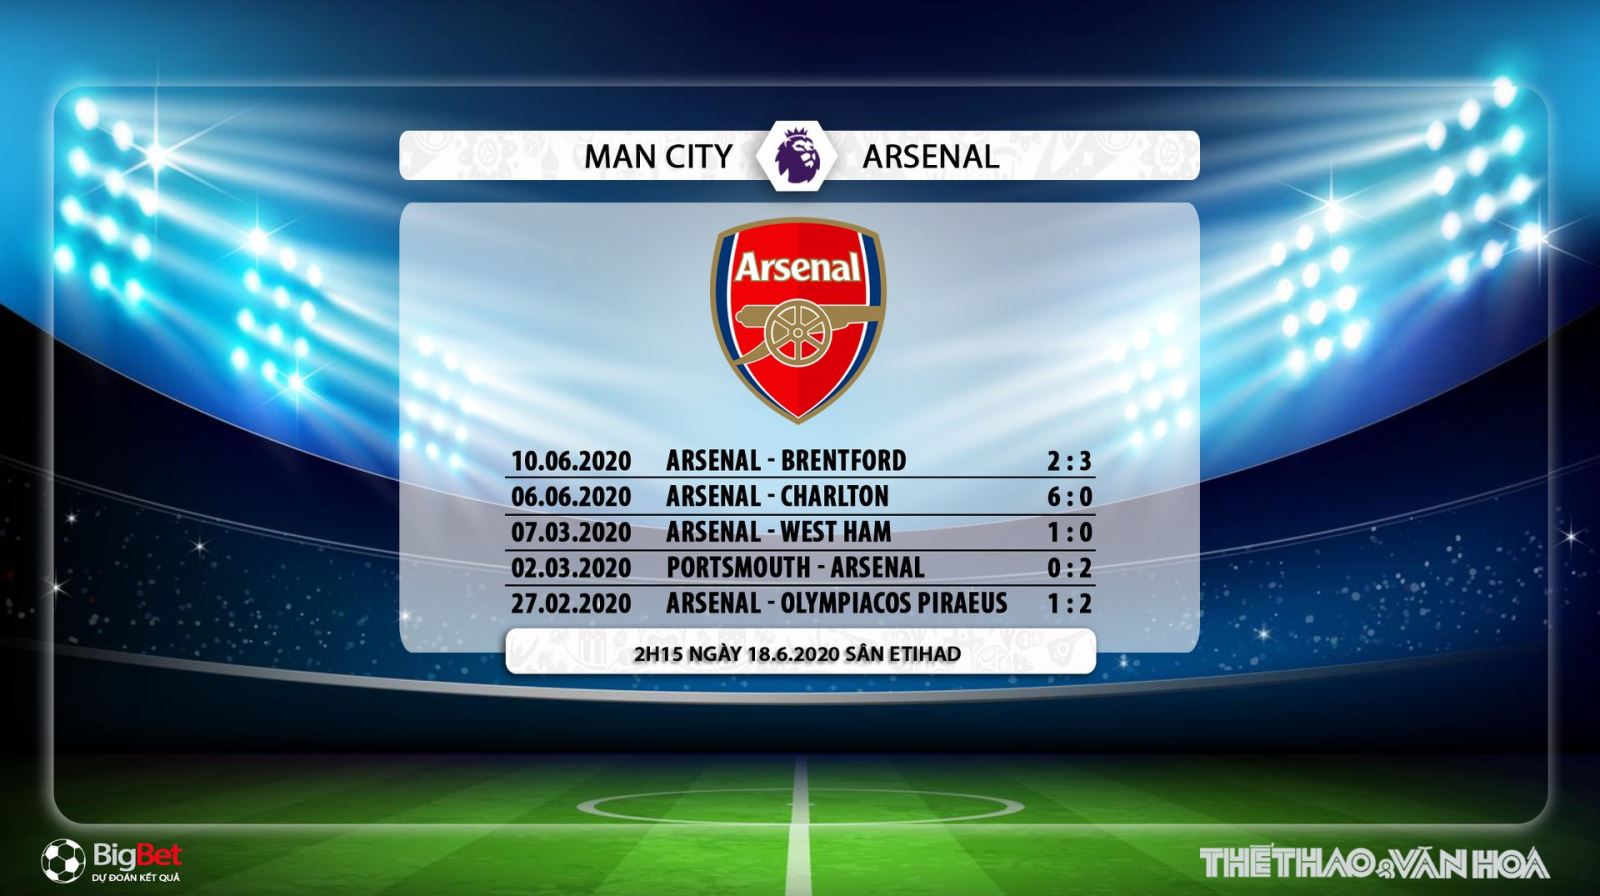 Man City vs Arsenal, Man City, Arsenal, nhận định bóng đá, kèo bóng đá, nhận định, trực tiếp bóng đá, bong da, lịch thi đấu